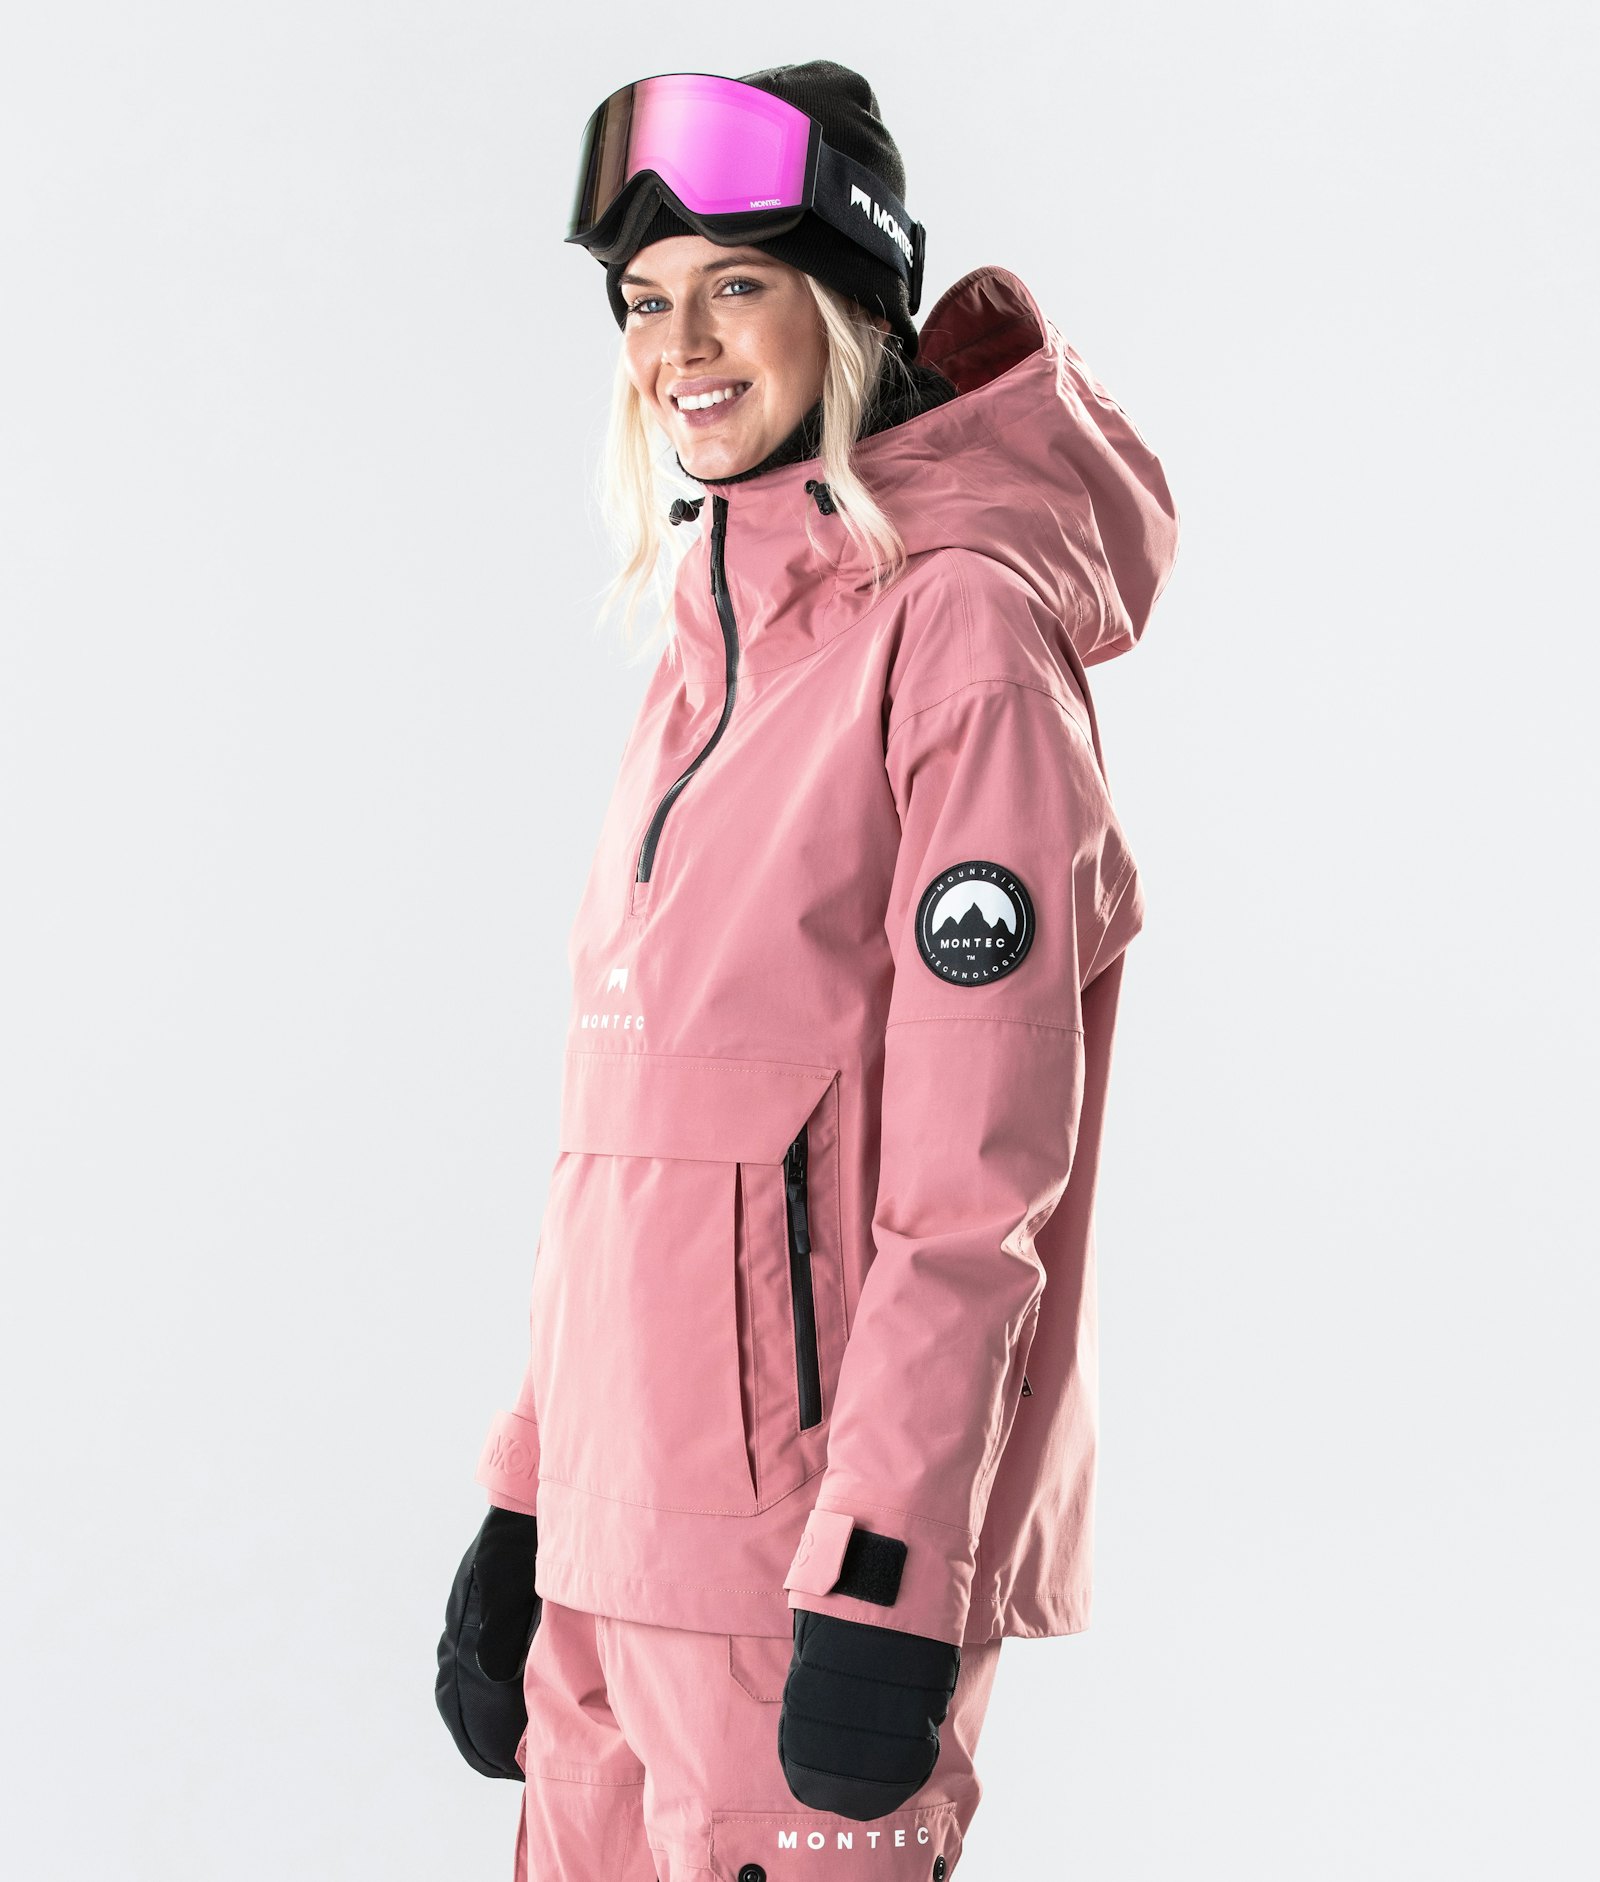 Typhoon W 2020 Veste Snowboard Femme Pink